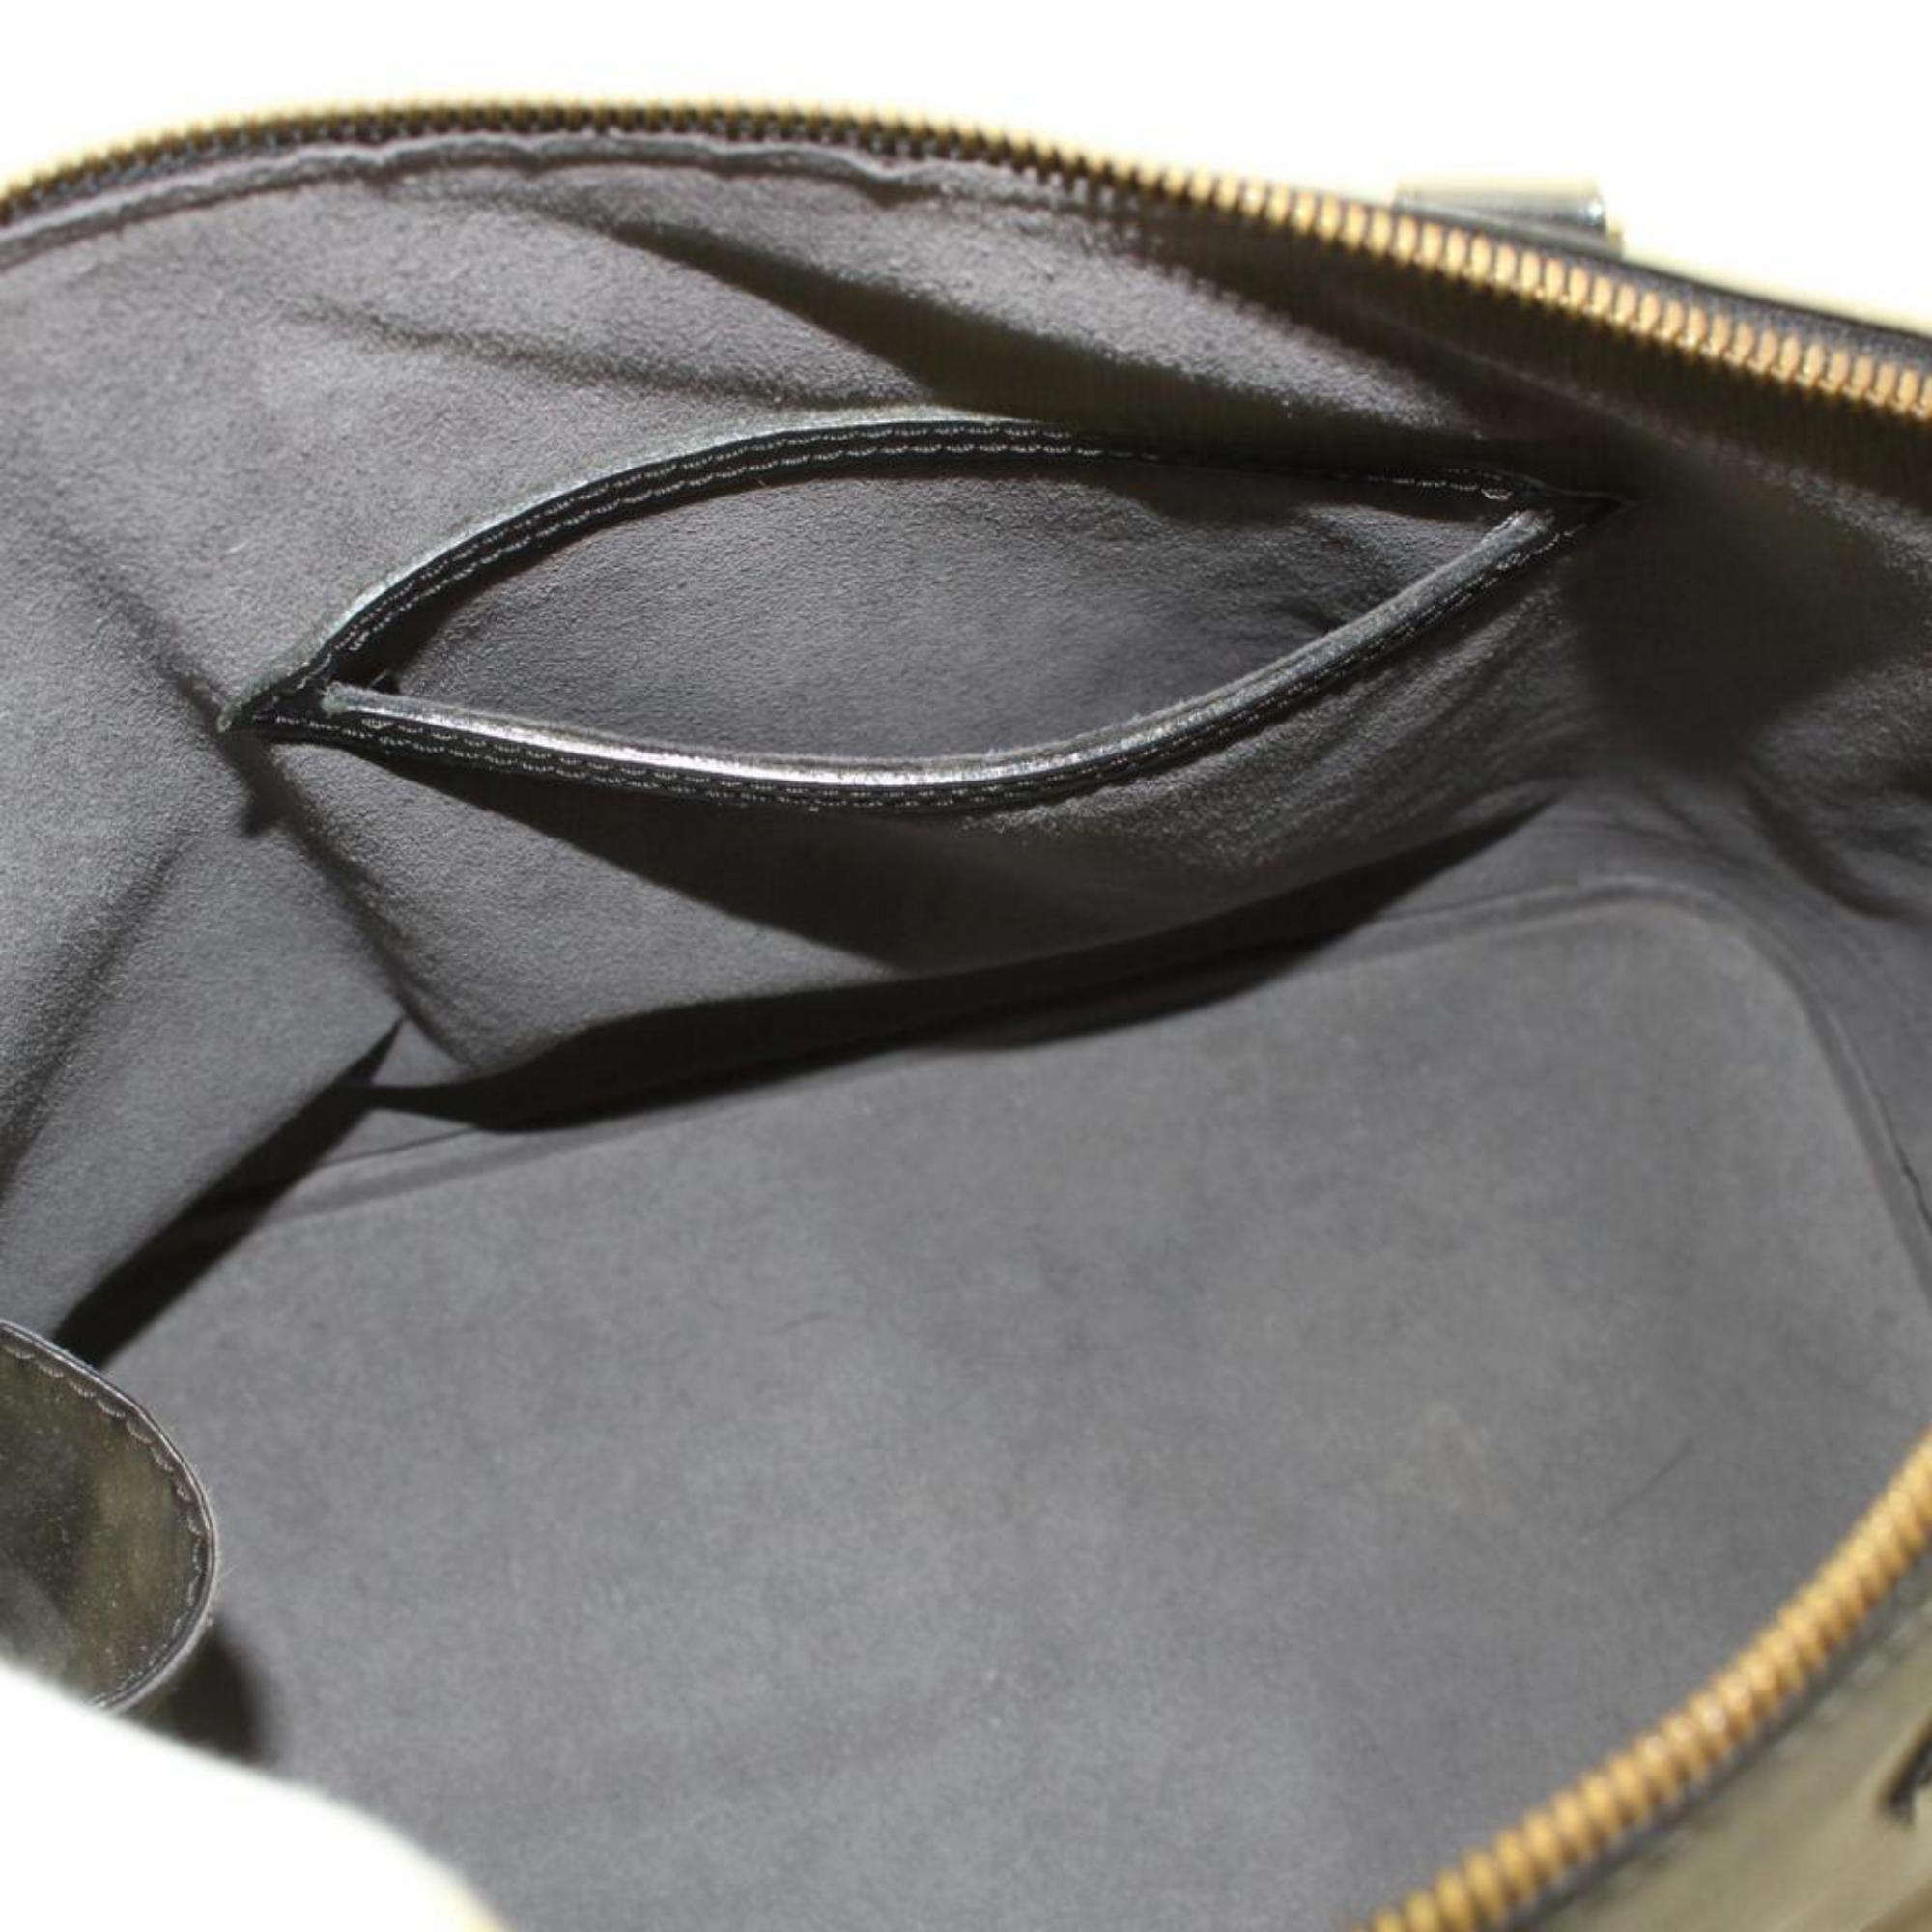 Louis Vuitton Alma Noir with Strap 868643 Black Leather Satchel For Sale 7